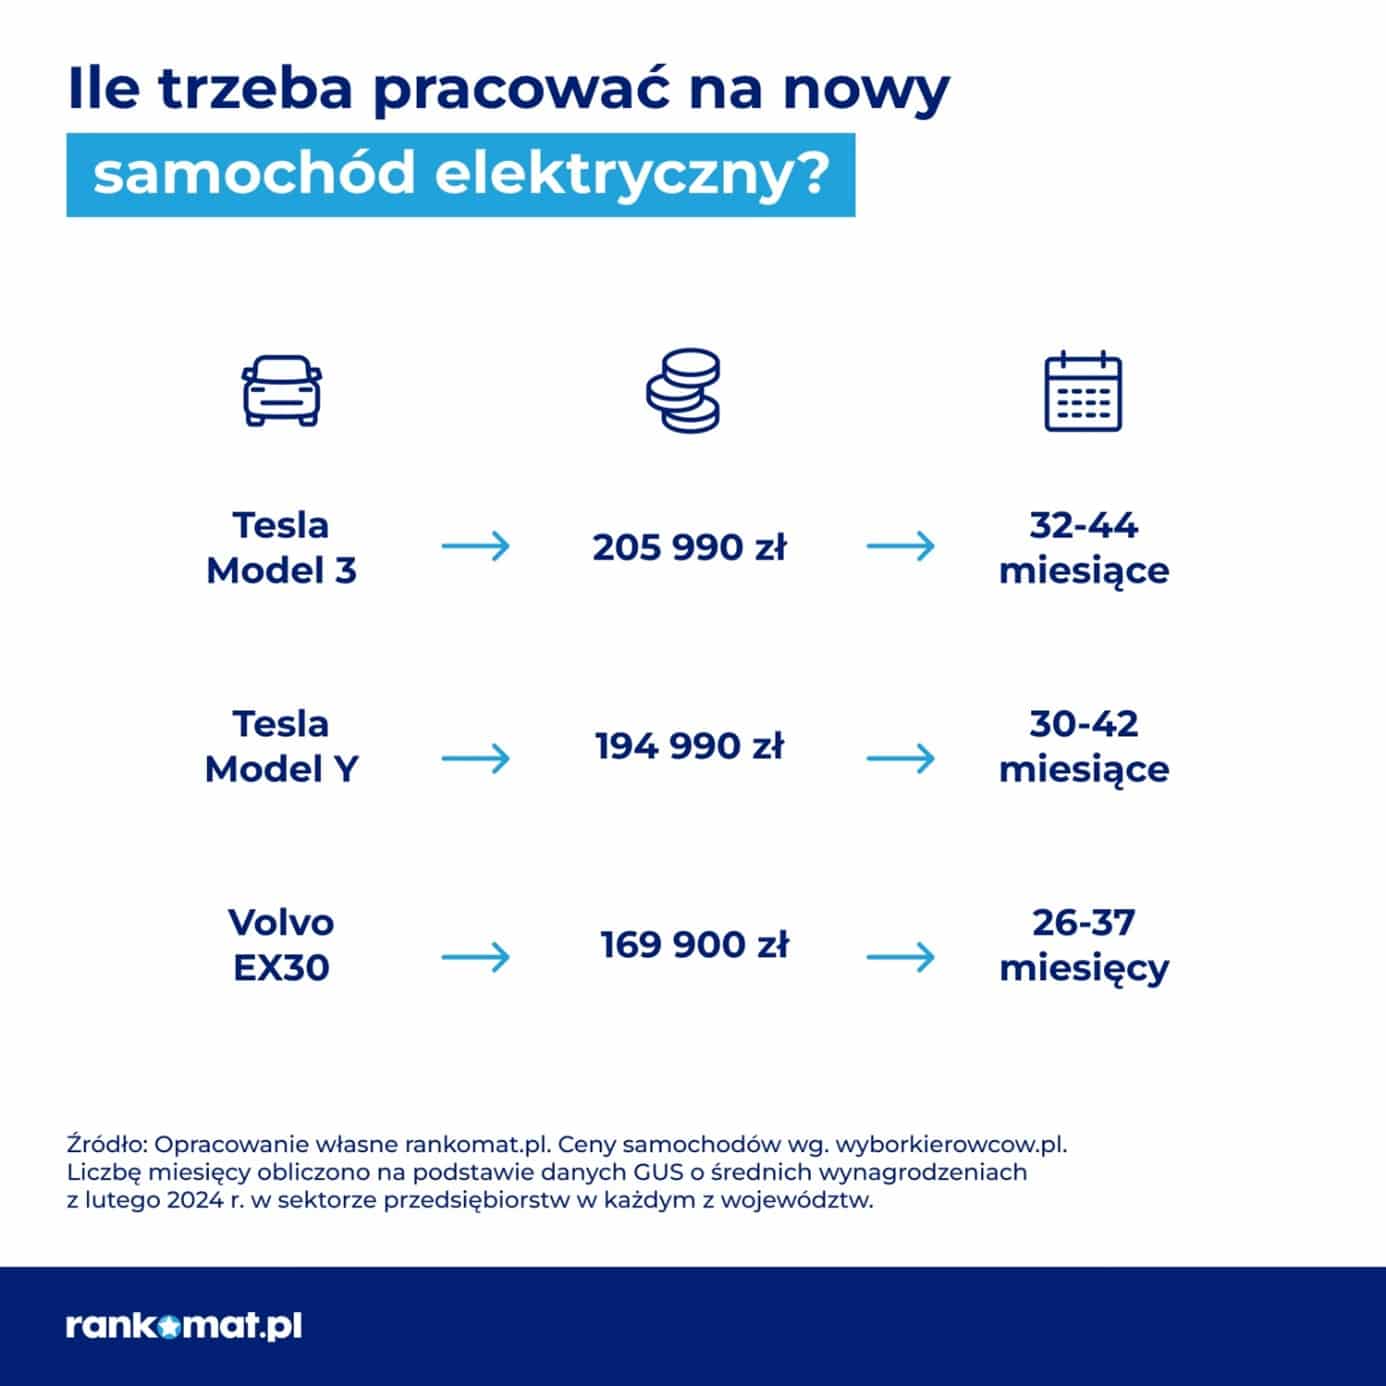 Rankomat.pl – ile trzeba pracować na nowy samochód elektryczny